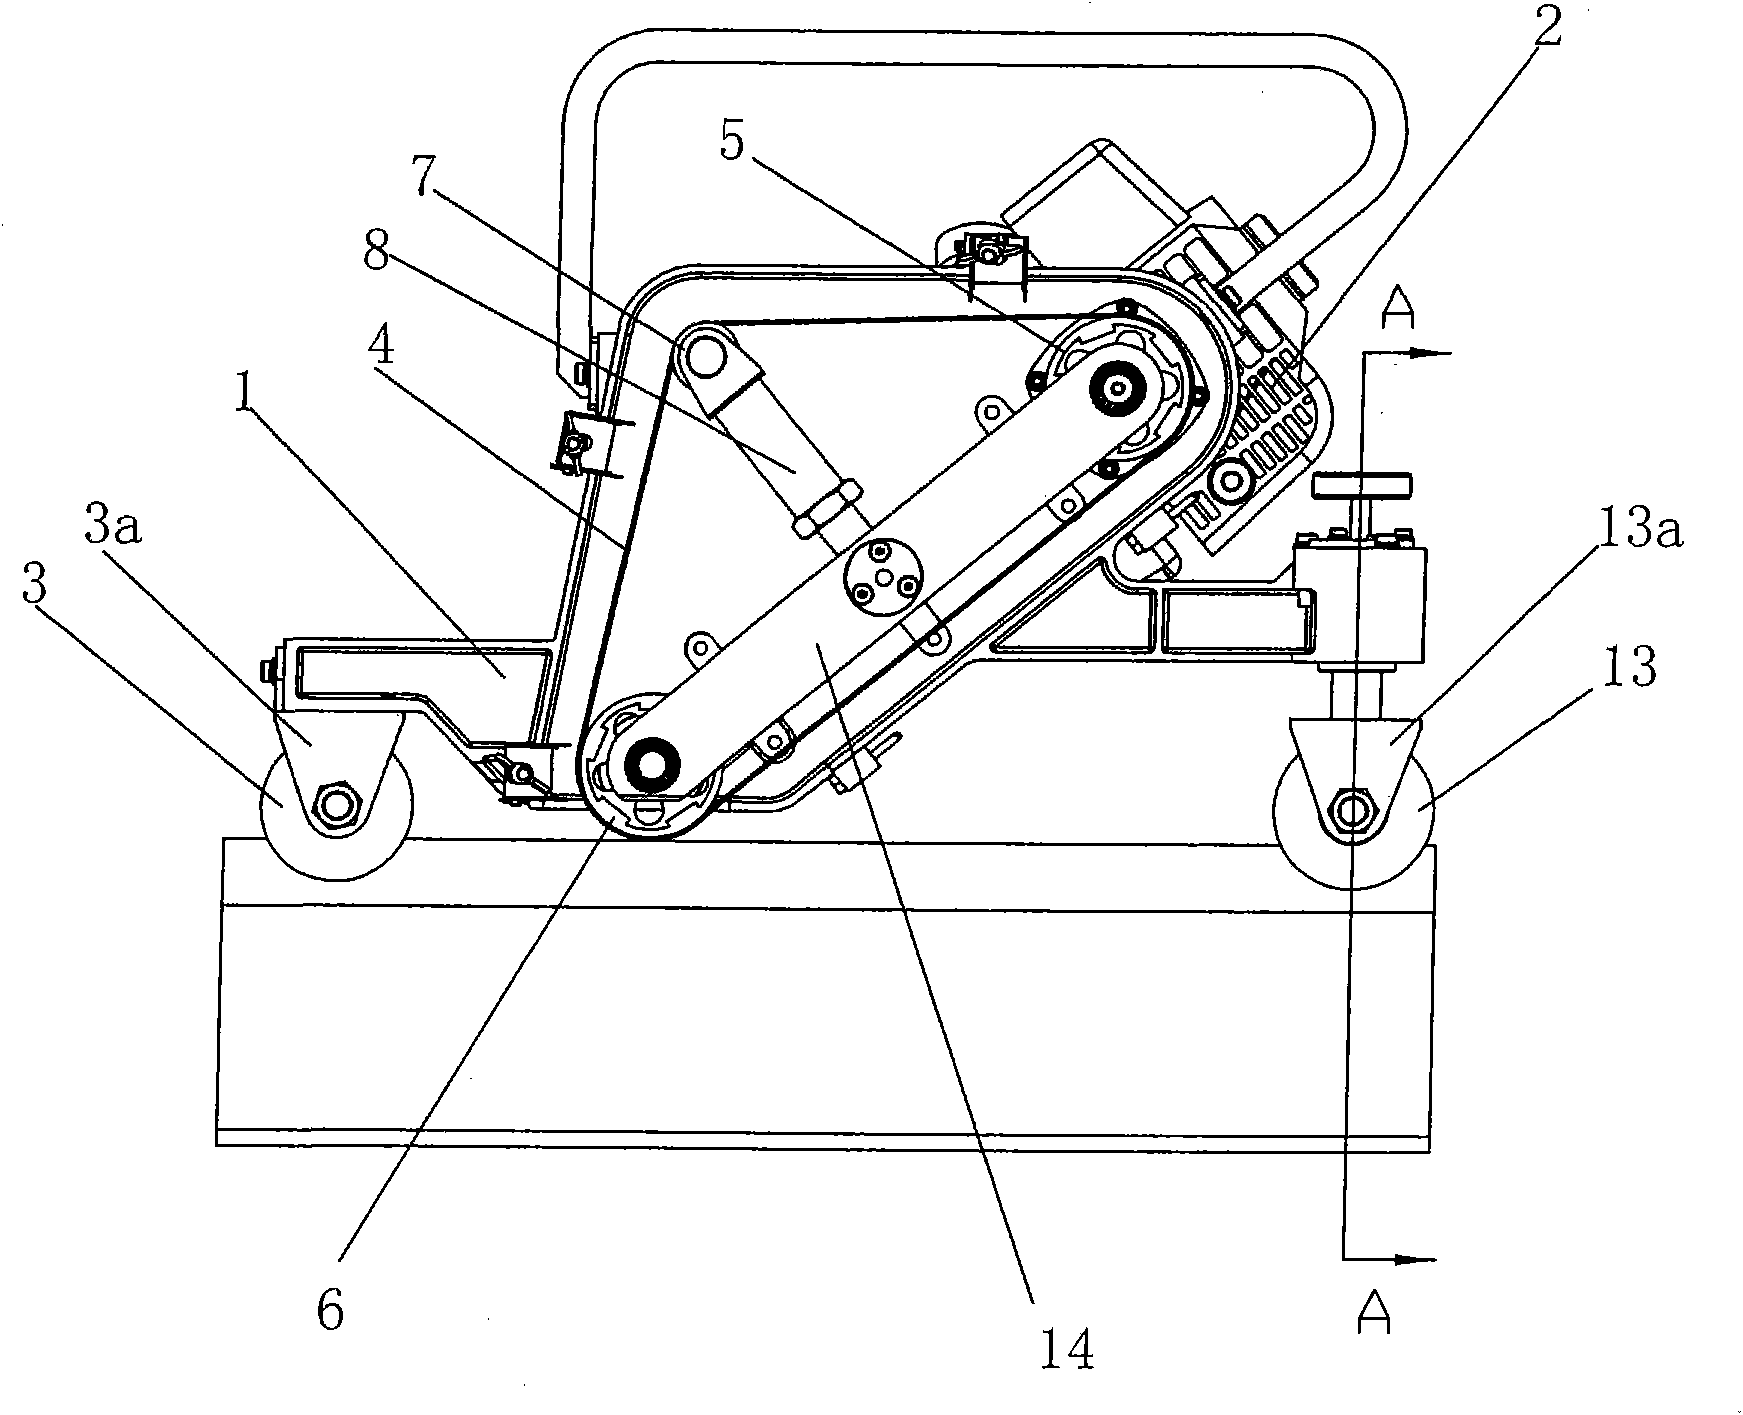 Internal combustion type rail belt grinder